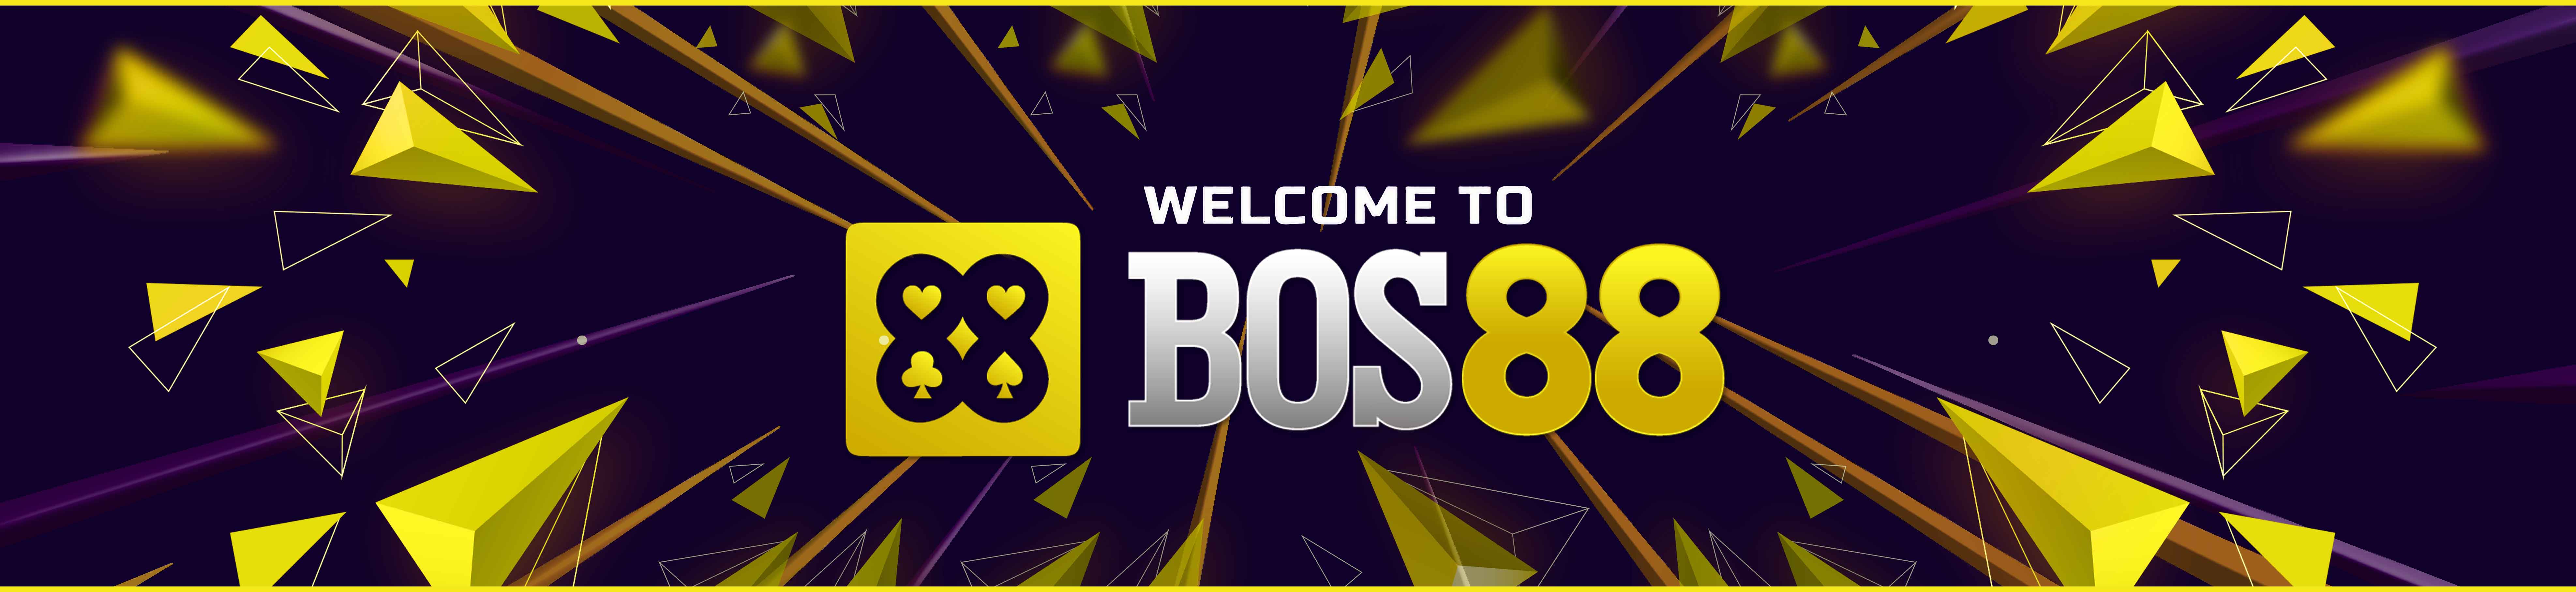 Bos88 Main